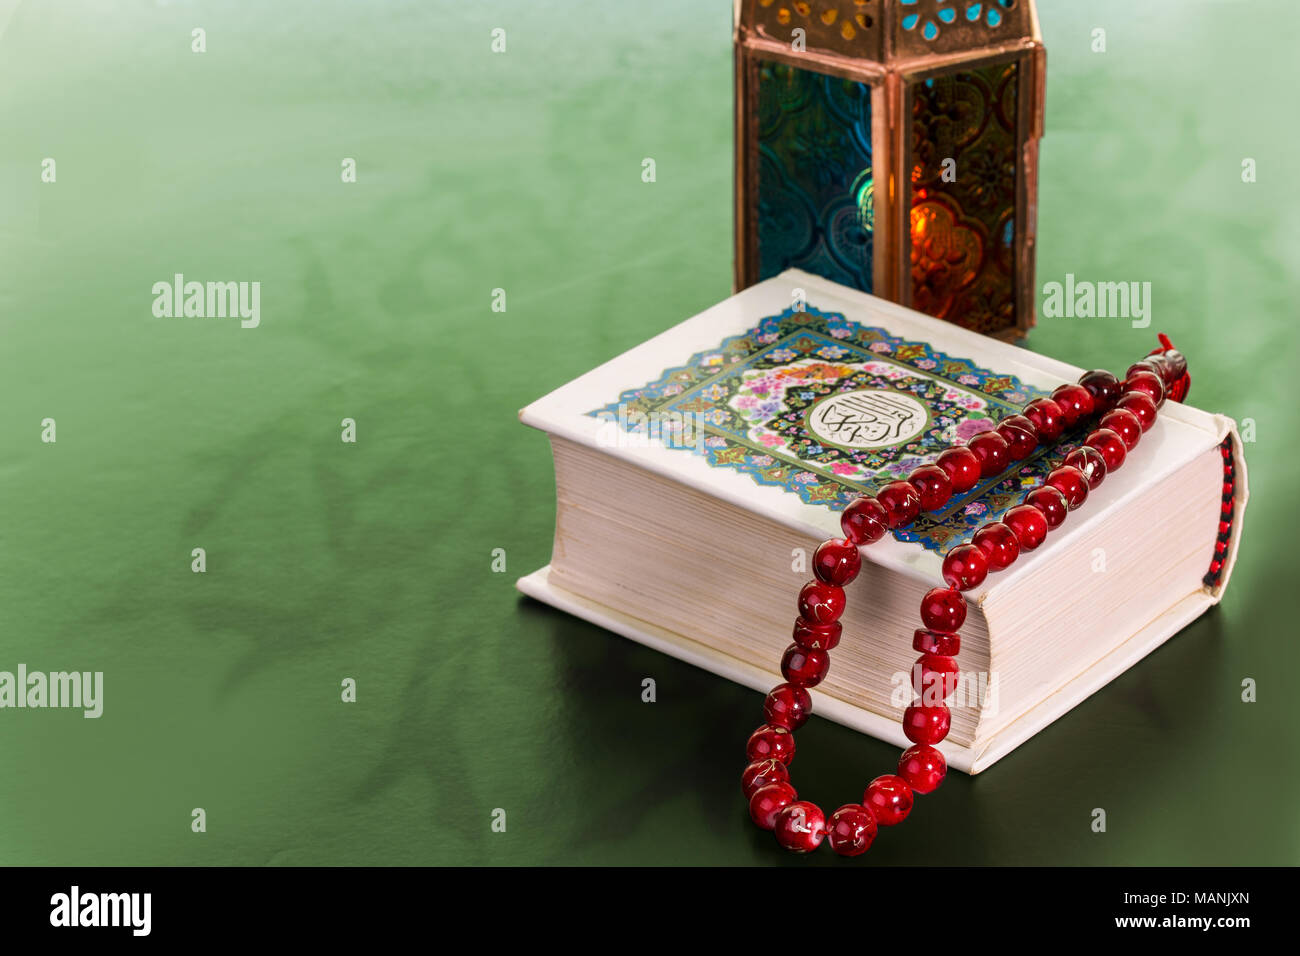 Khám phá tinh thần đạo lý và niềm tin với Holy Book of Quran. Tìm hiểu về lịch sử và truyền thống Hồi giáo qua câu chuyện được kể trong Kinh Quran tuyệt đẹp. Với đồ họa độc đáo và chi tiết, gói sản phẩm sẽ mang lại cho bạn những trải nghiệm phong phú.